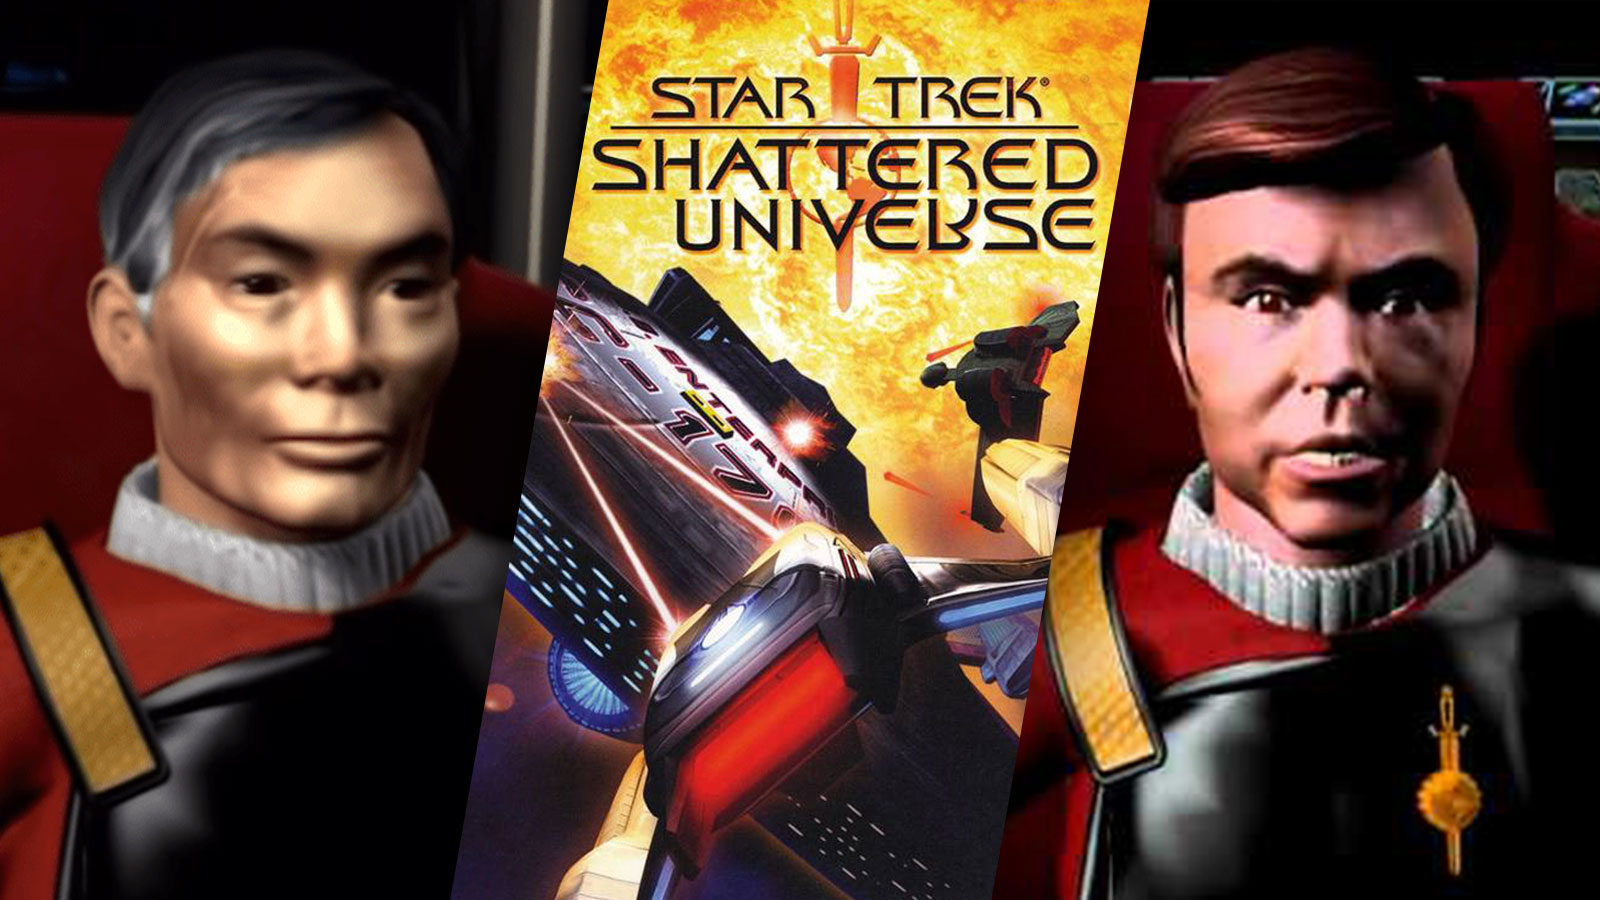 worst Star Trek Video Games - Star Trek: Shattered Universe